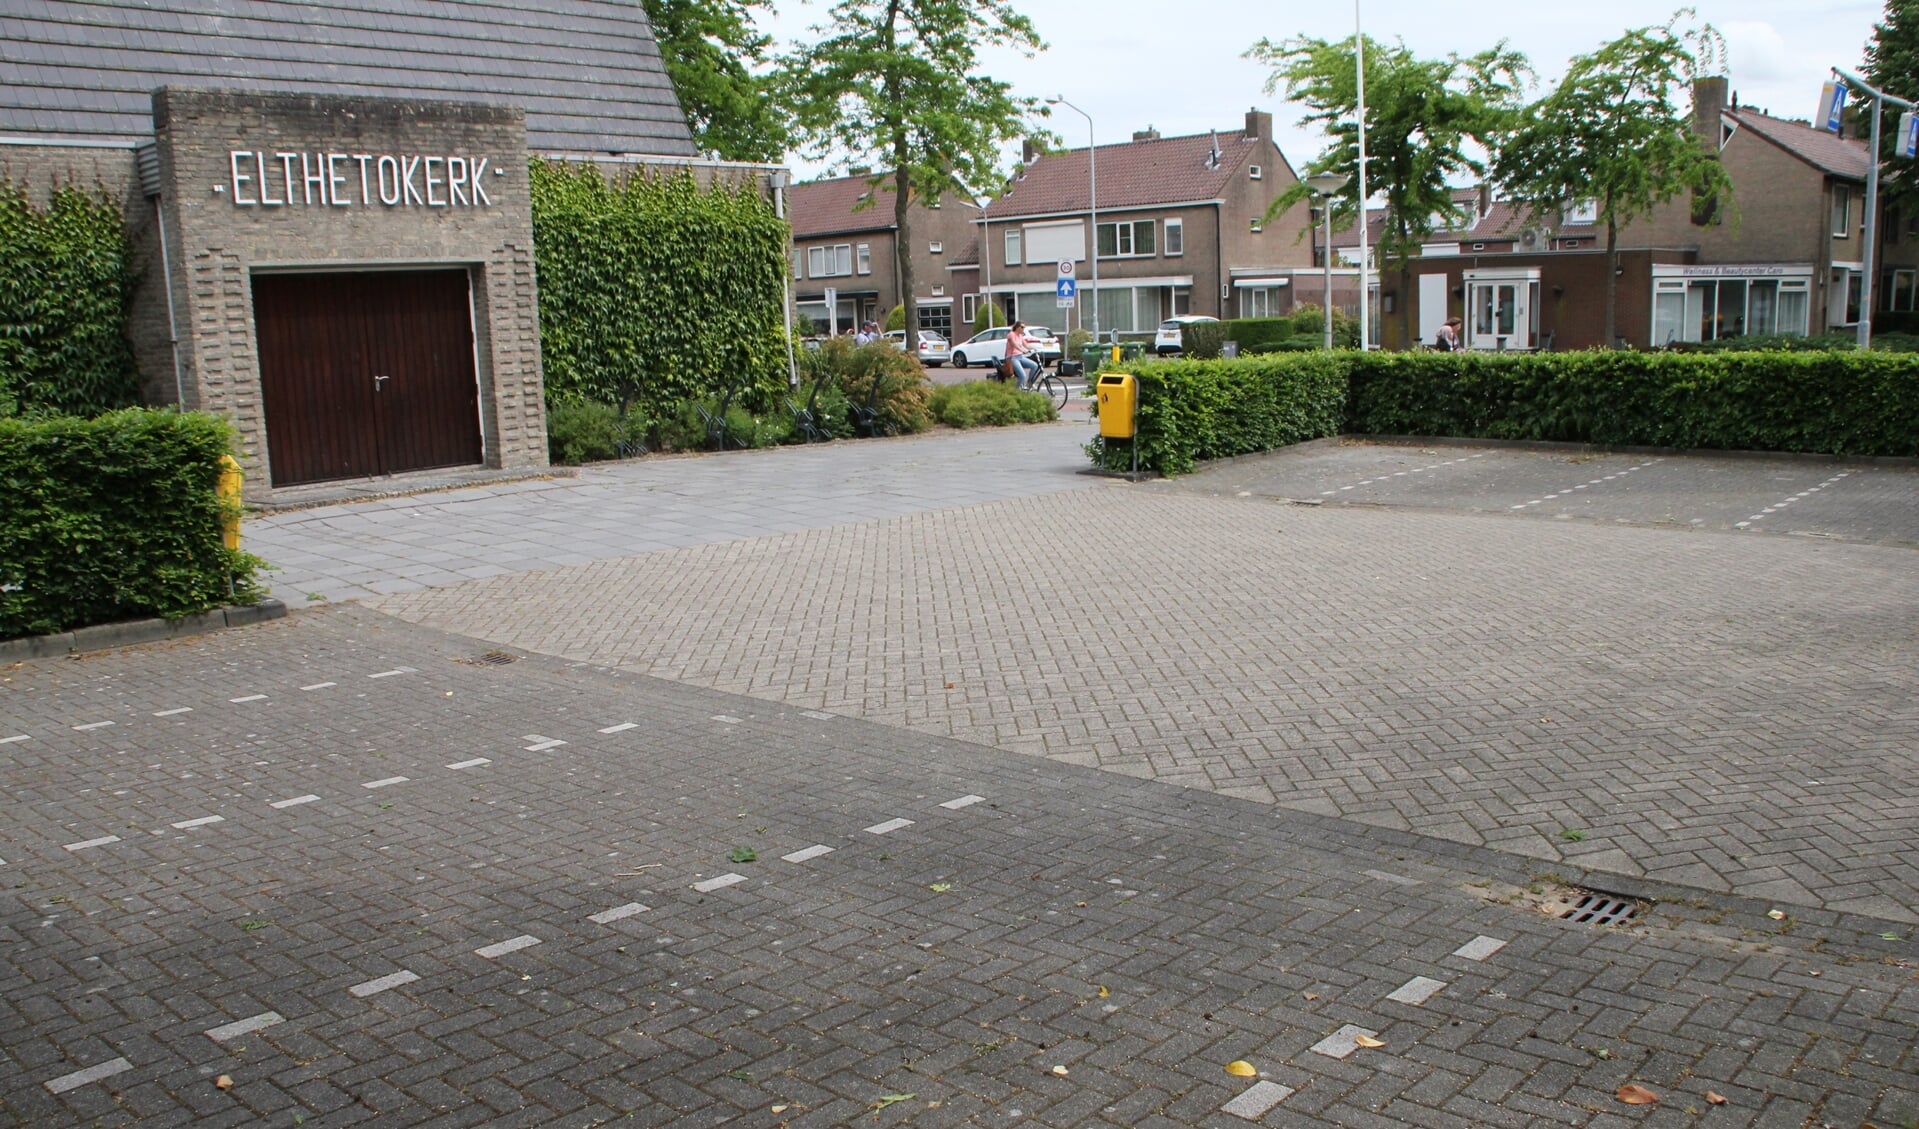 • De lege parkeerplaats van de Elthetokerk in Alblasserdam.